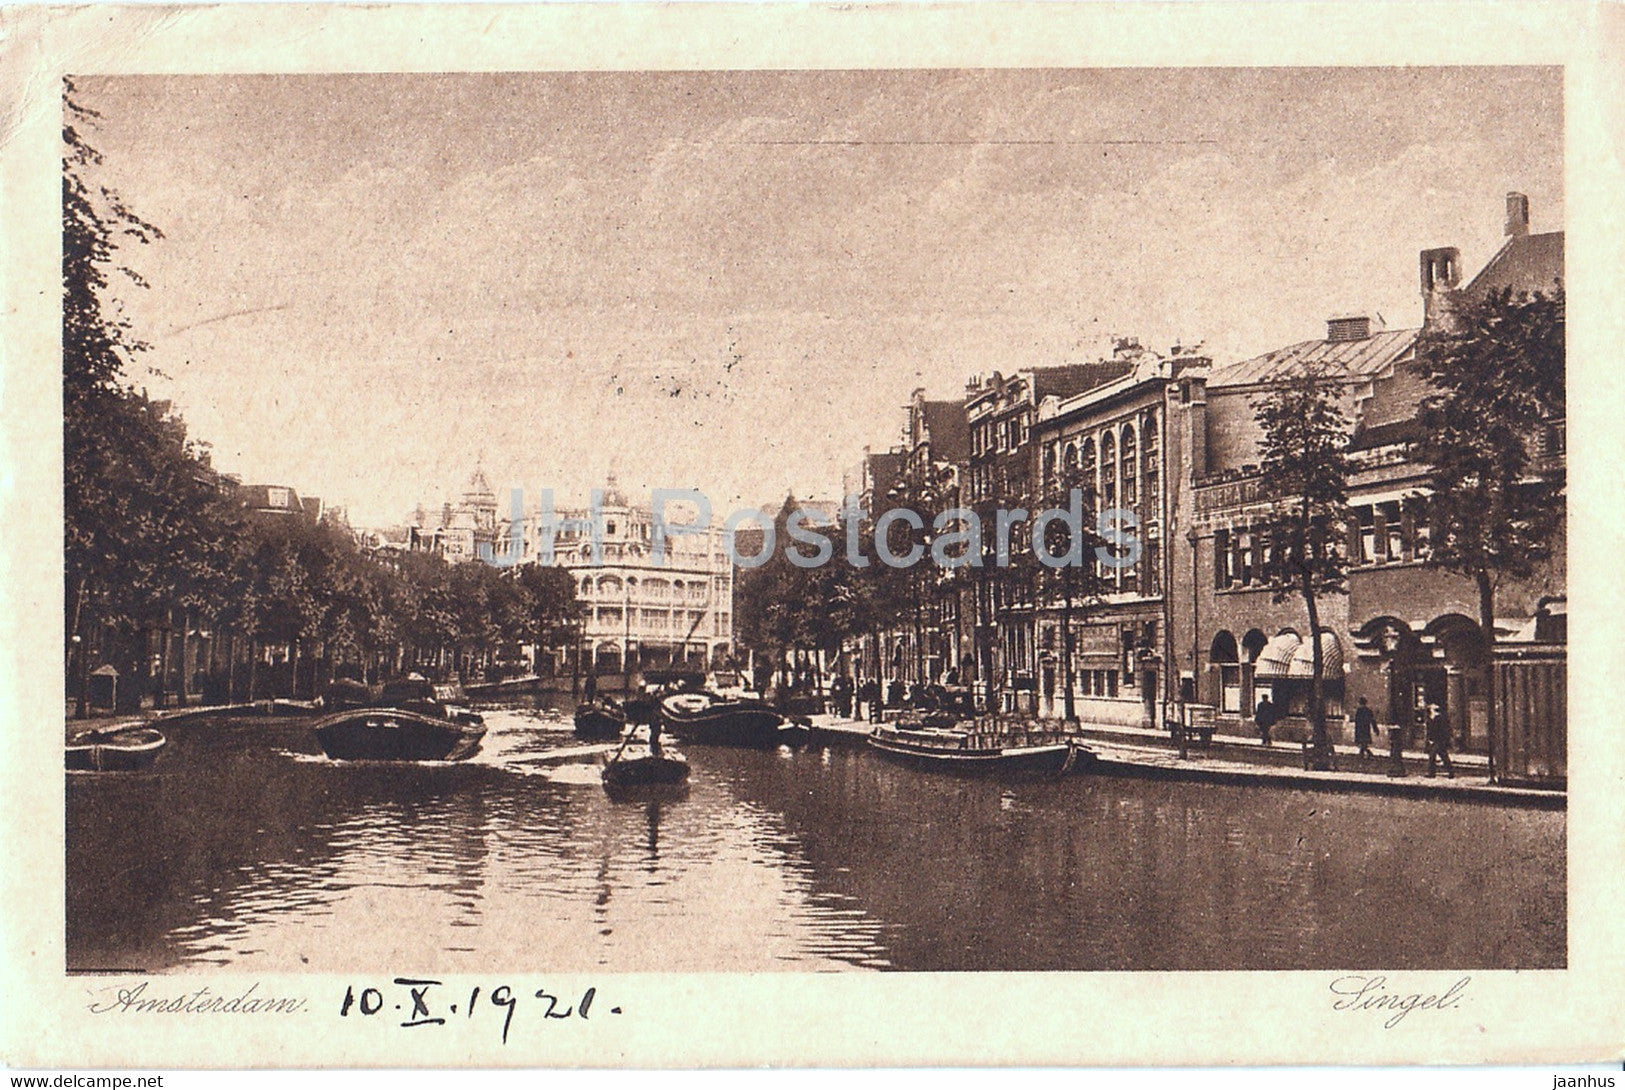 Amsterdam - Singel - boat - old postcard - 1921 - Netherlands - used - JH Postcards